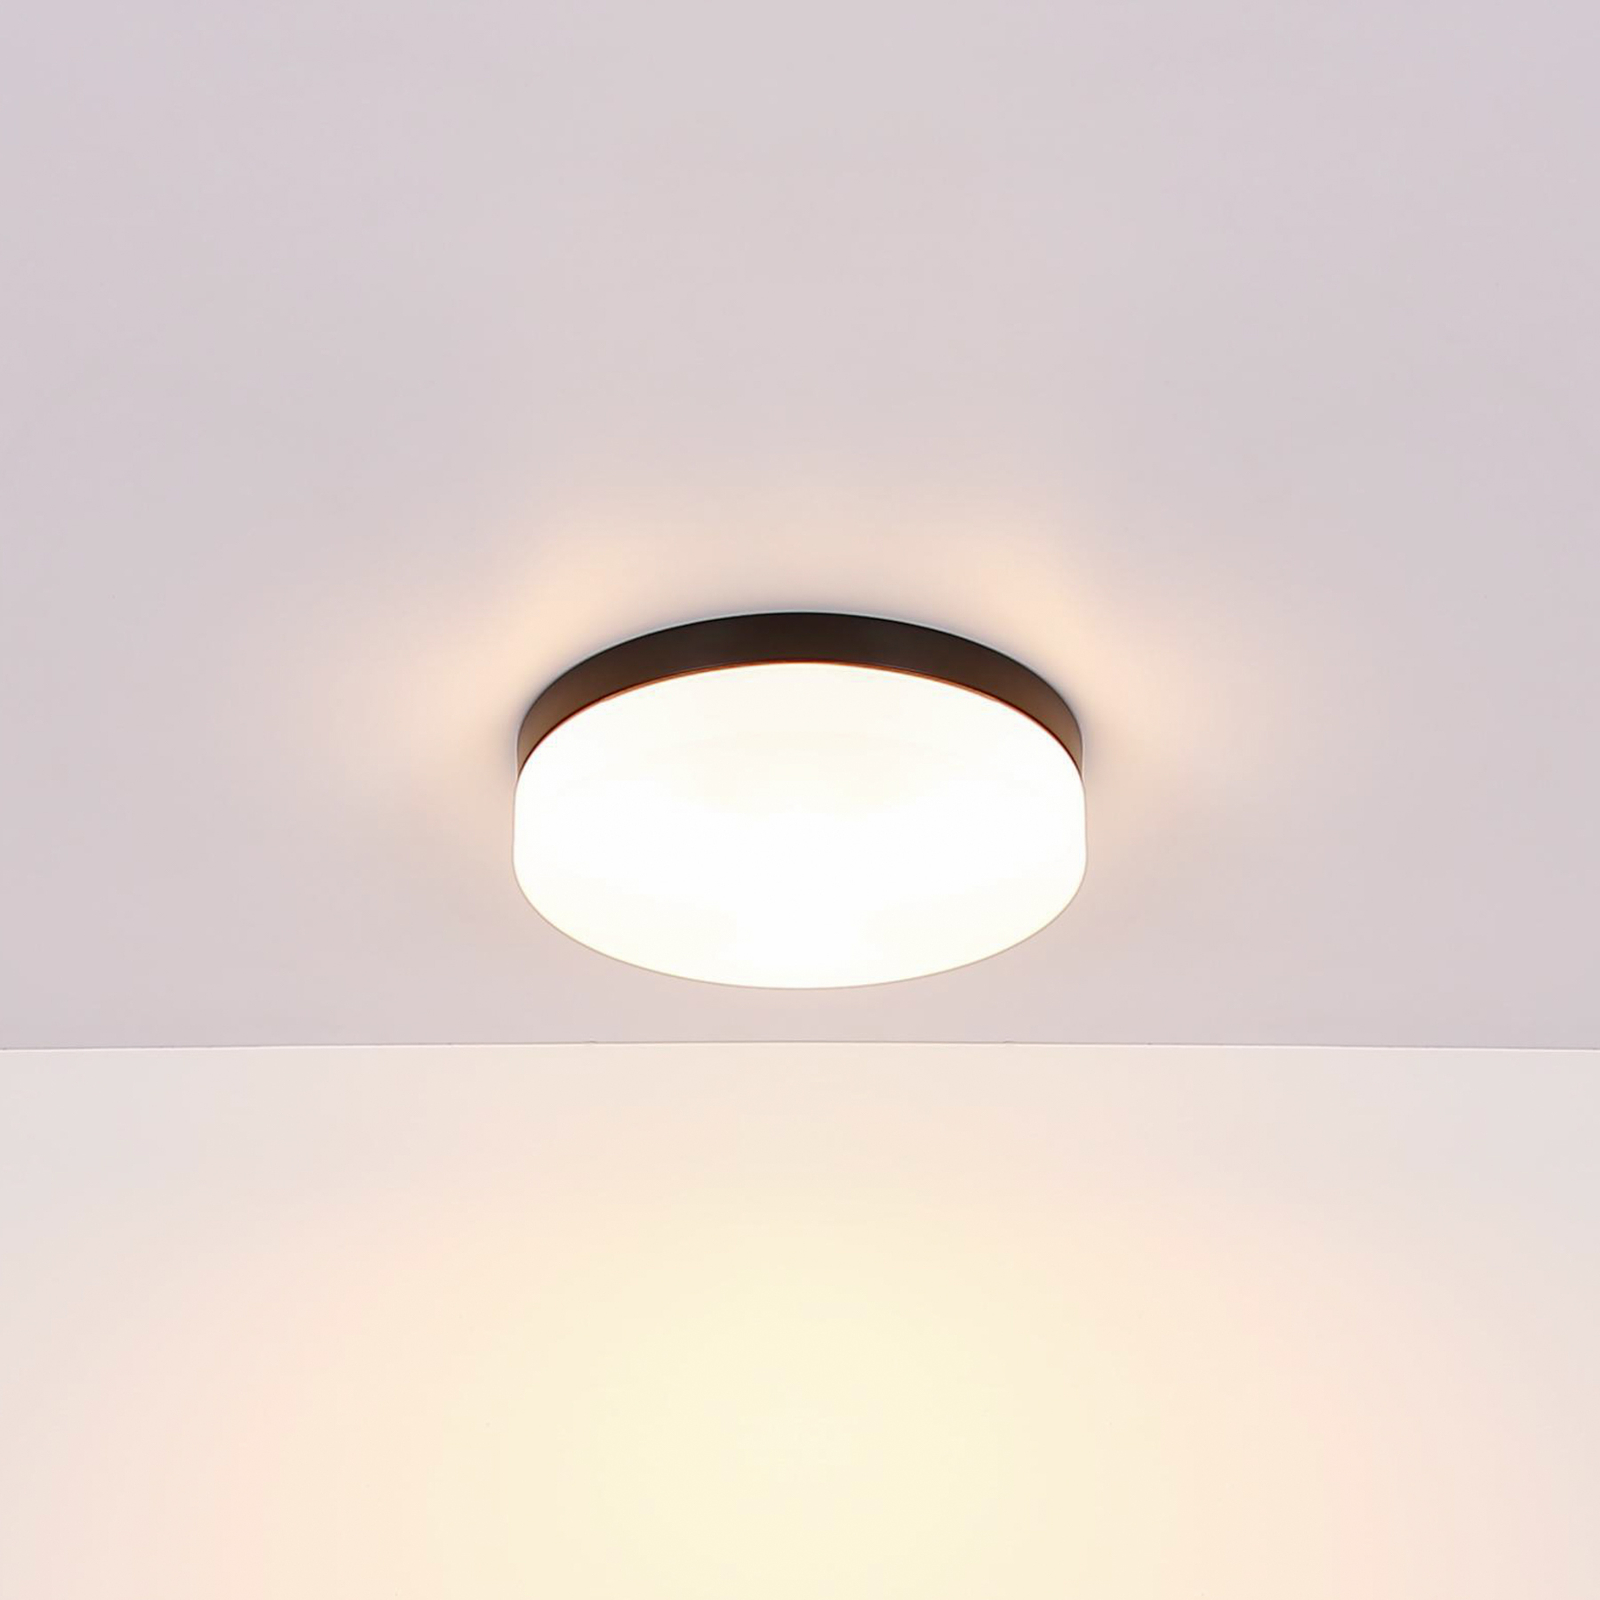 Vranos outdoor ceiling light, matt black, Ø 24 cm, aluminium